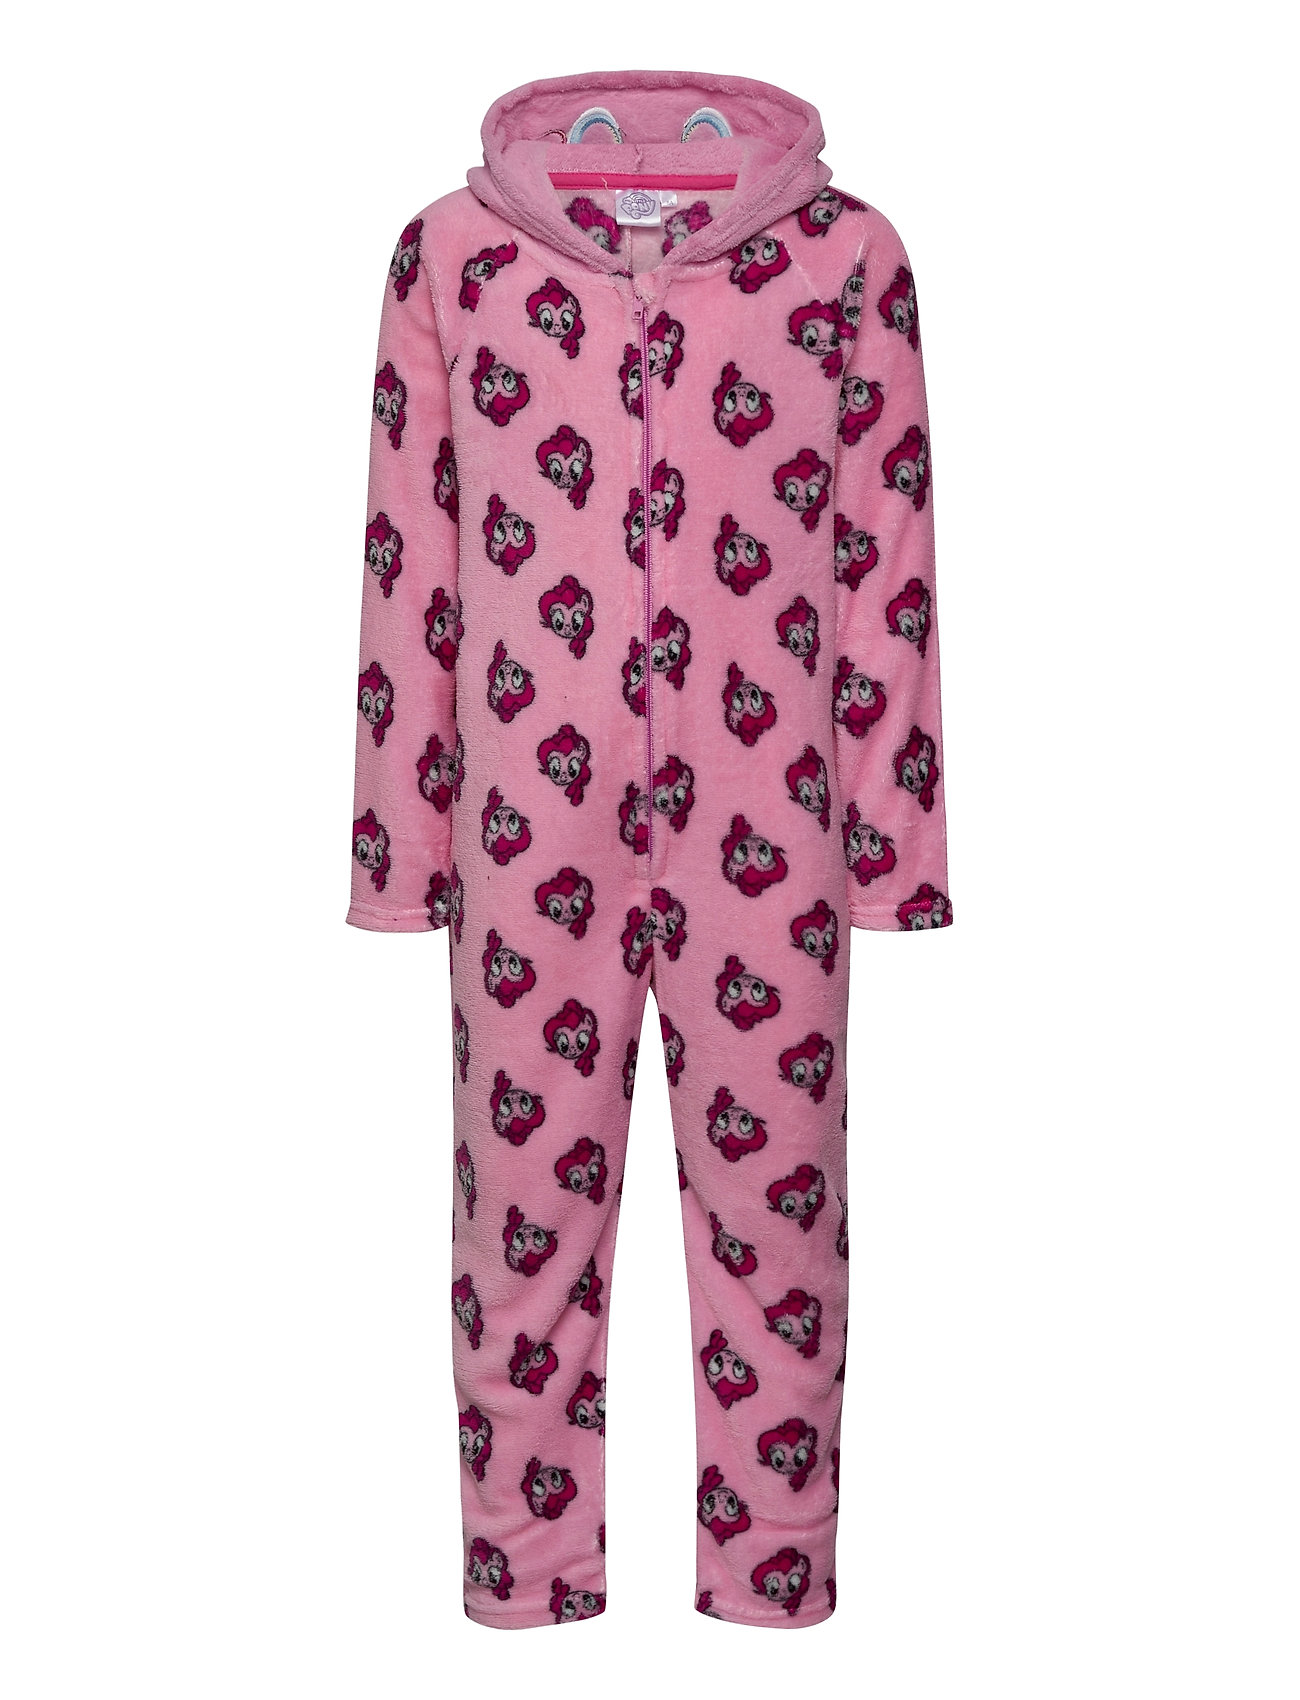 Pyjama Overall Pyjamas Sie Jumpsuit Lyserød My Little Pony